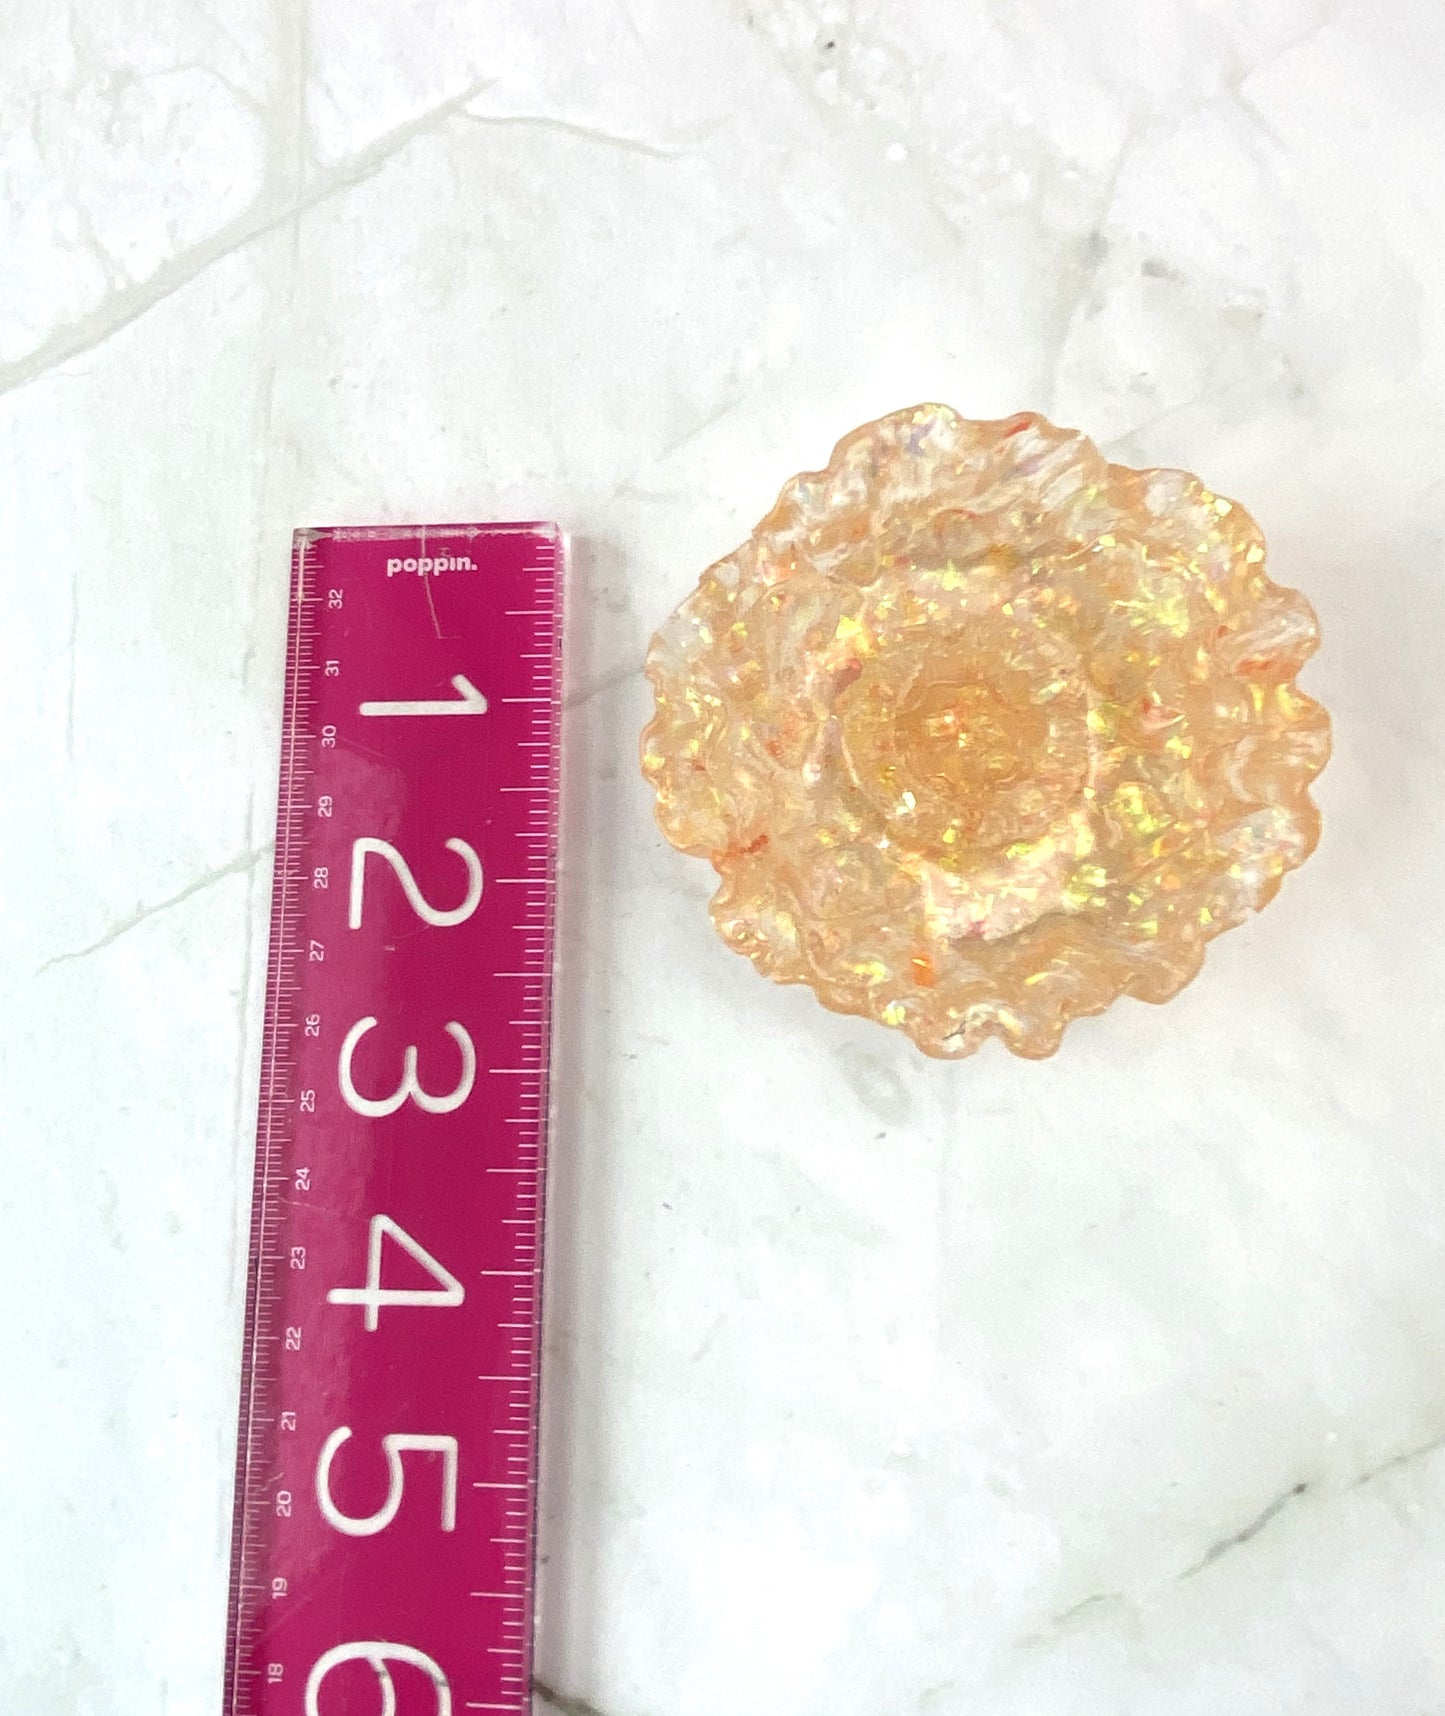 Orange Glitter Poppy Flower Ring Dish | Handmade Home Décor